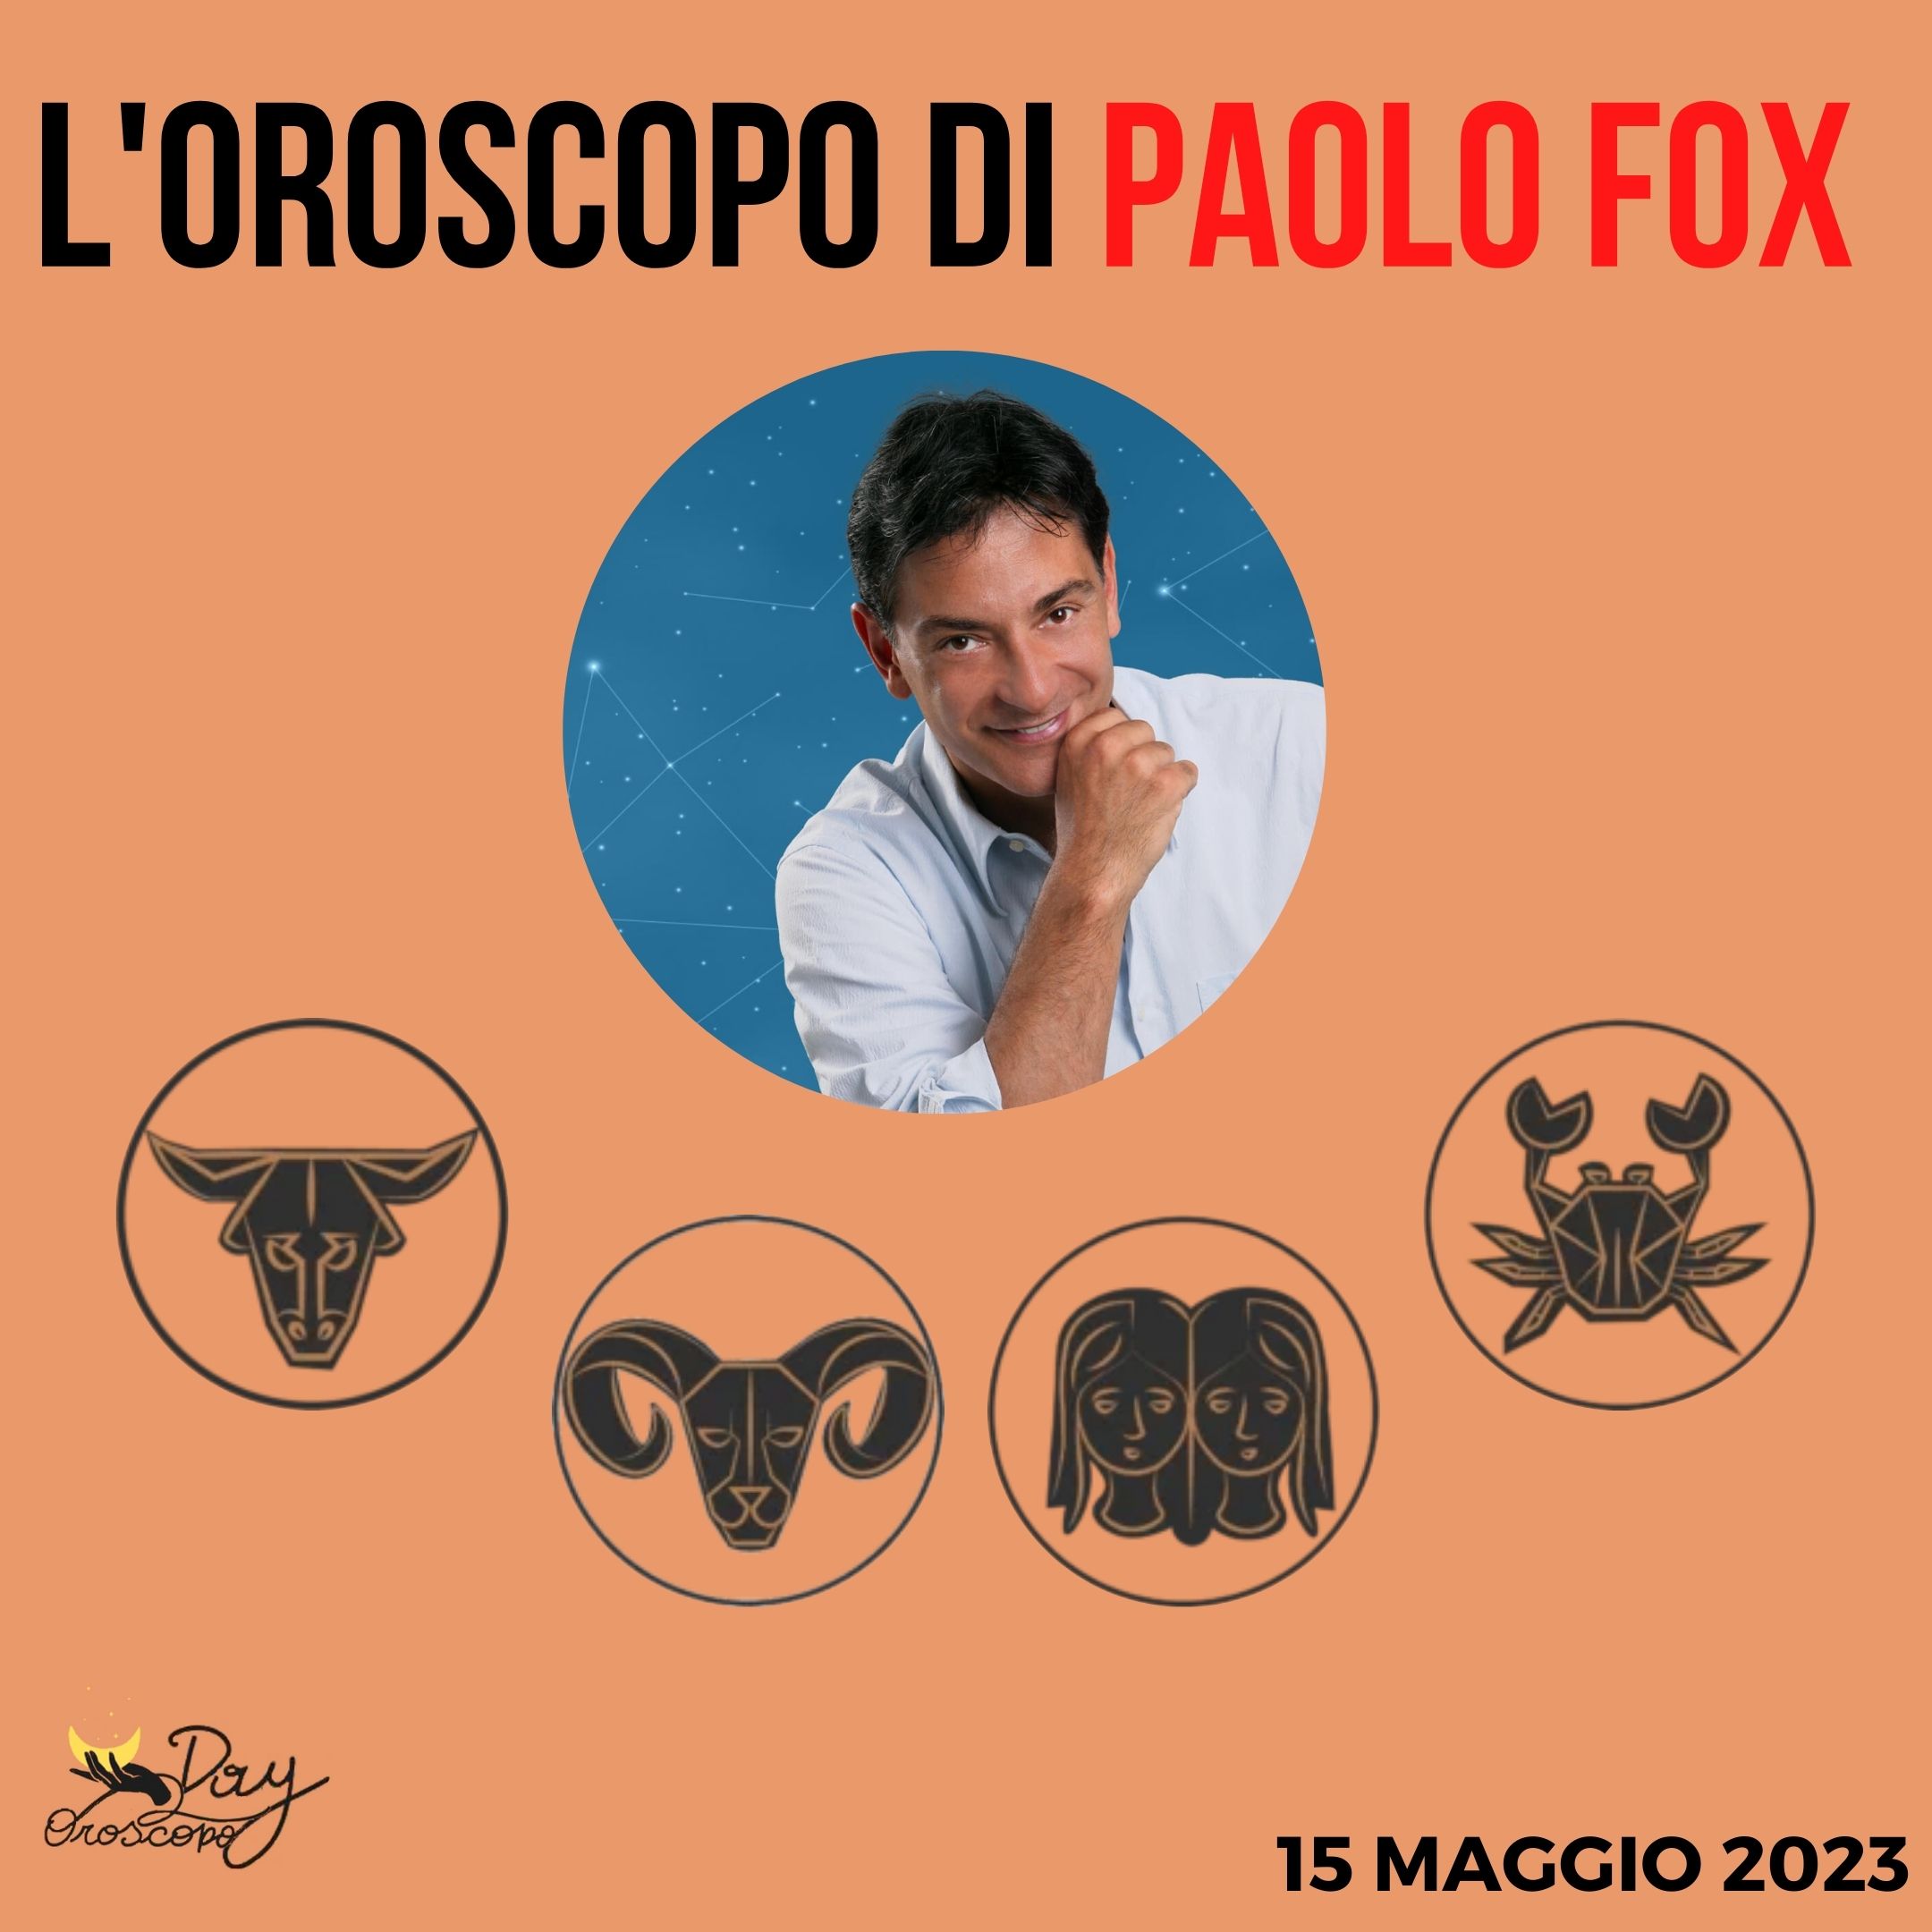 Oroscopo oggi domani Paolo Fox 15 maggio Toro Ariete Gemelli Cancro